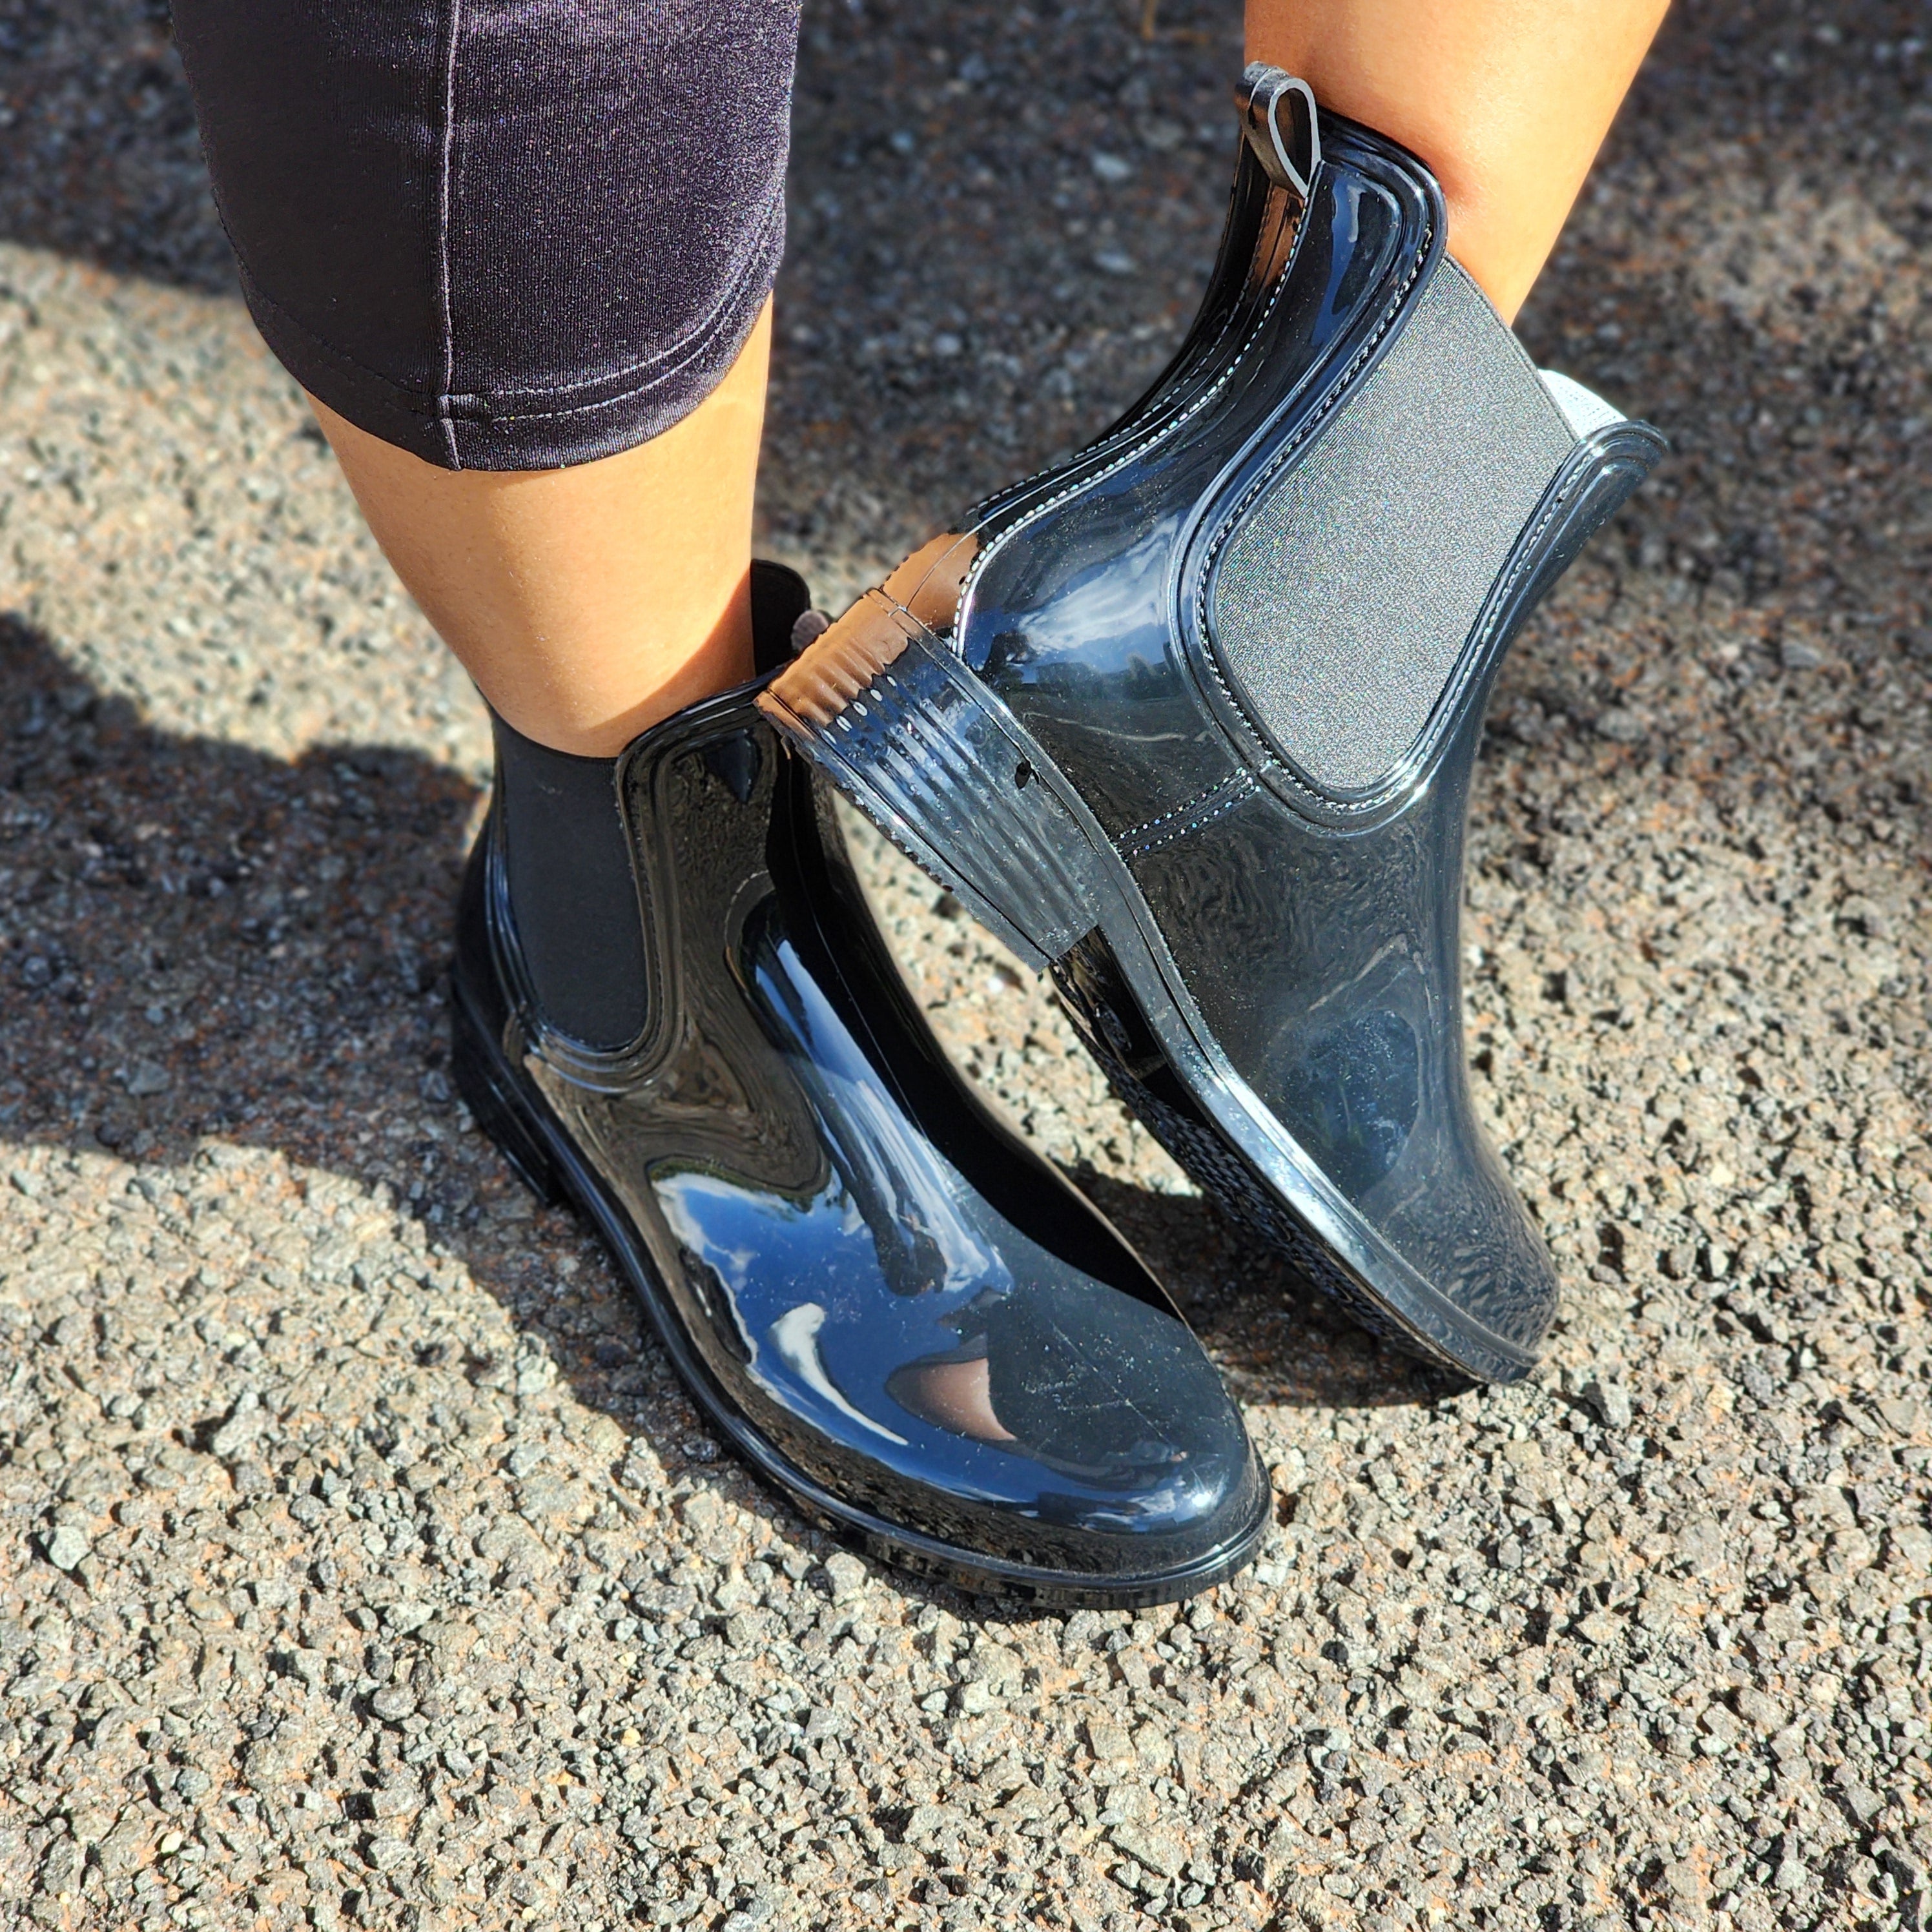 Women's Ankle Rain Boots Waterproof Chelsea Boots ladies gumboots